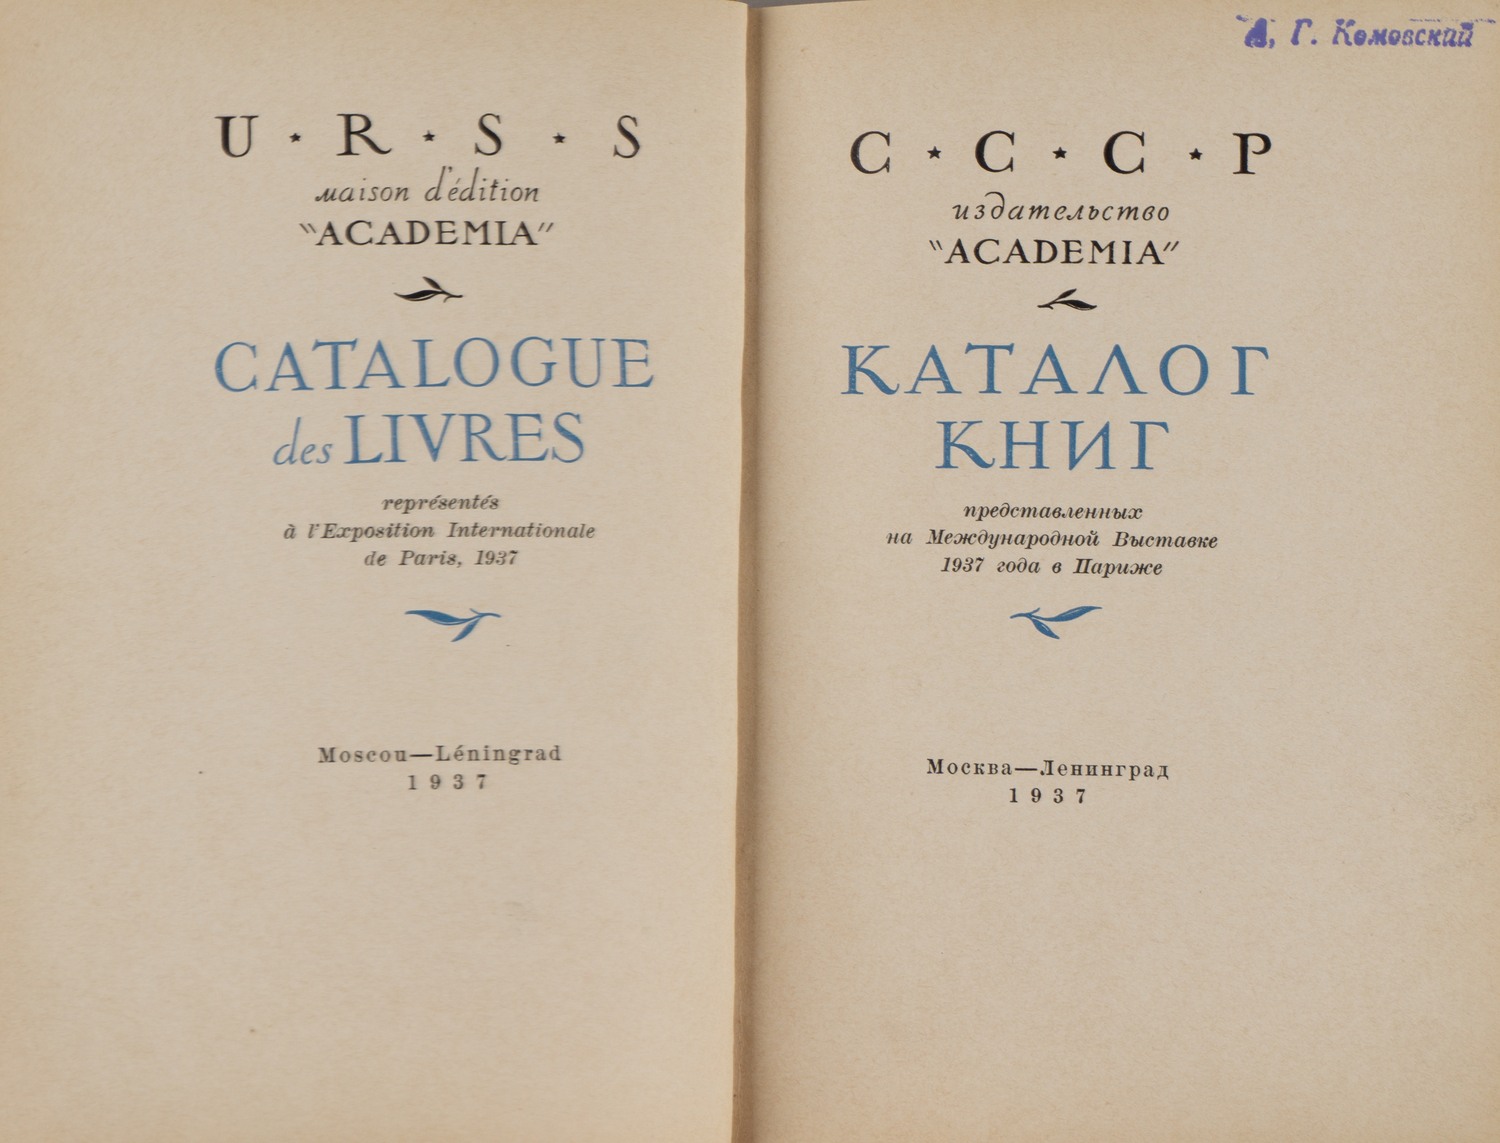 СССР. Издательство «Academia». Каталог книг, представленных на Международной выставке 1937 года в Париже (М.-Л., 1937).